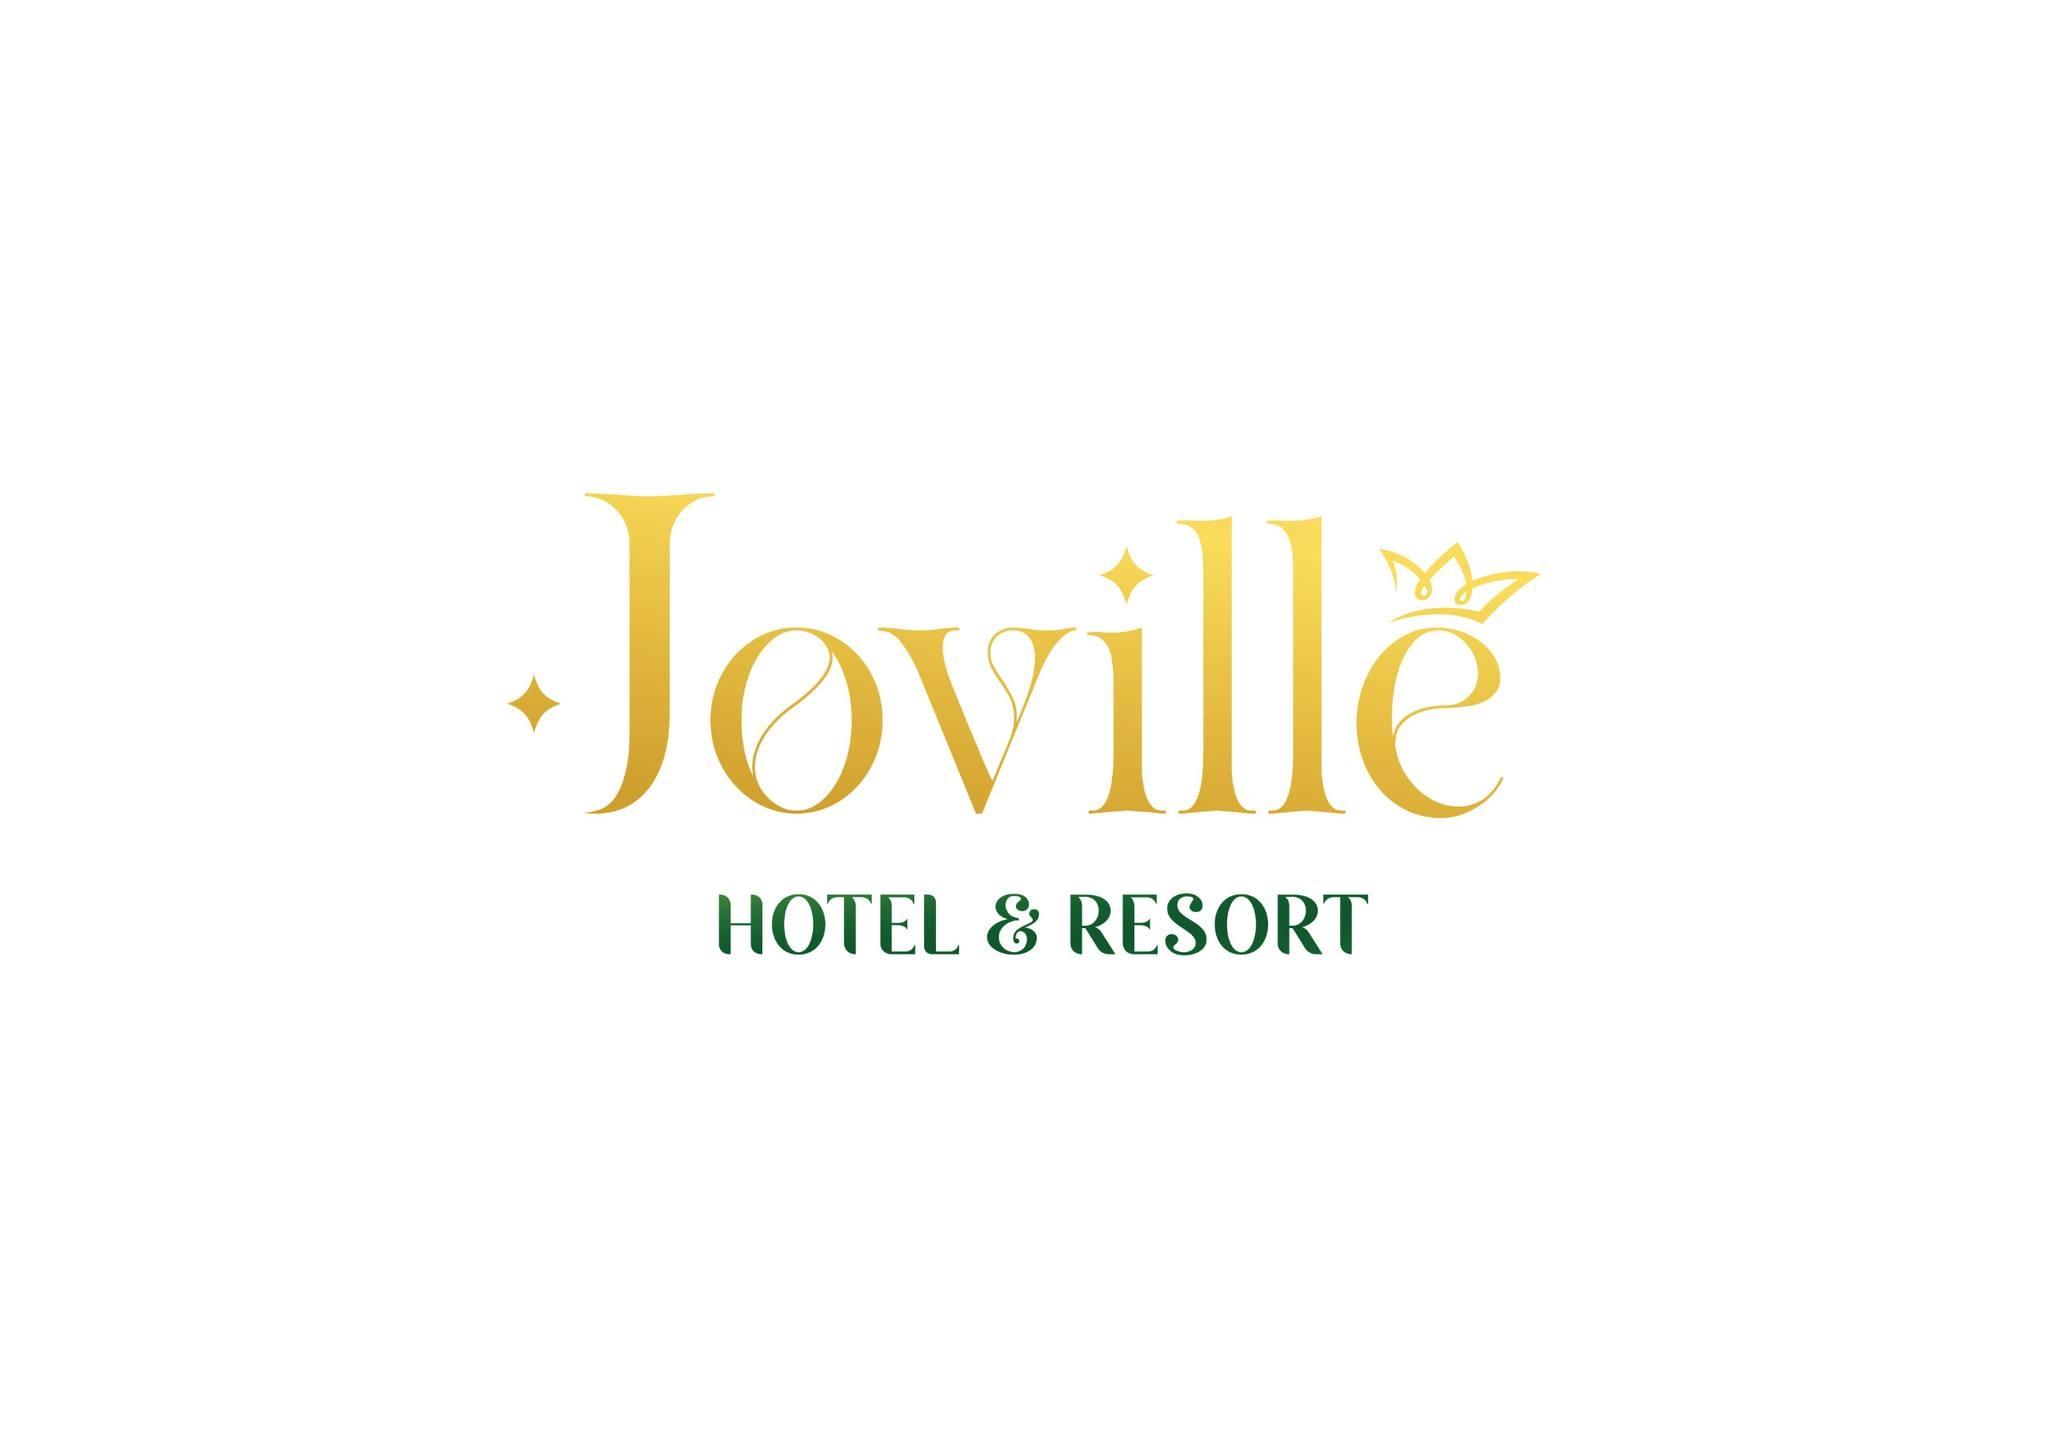 JOVILLE SA PA HOTEL